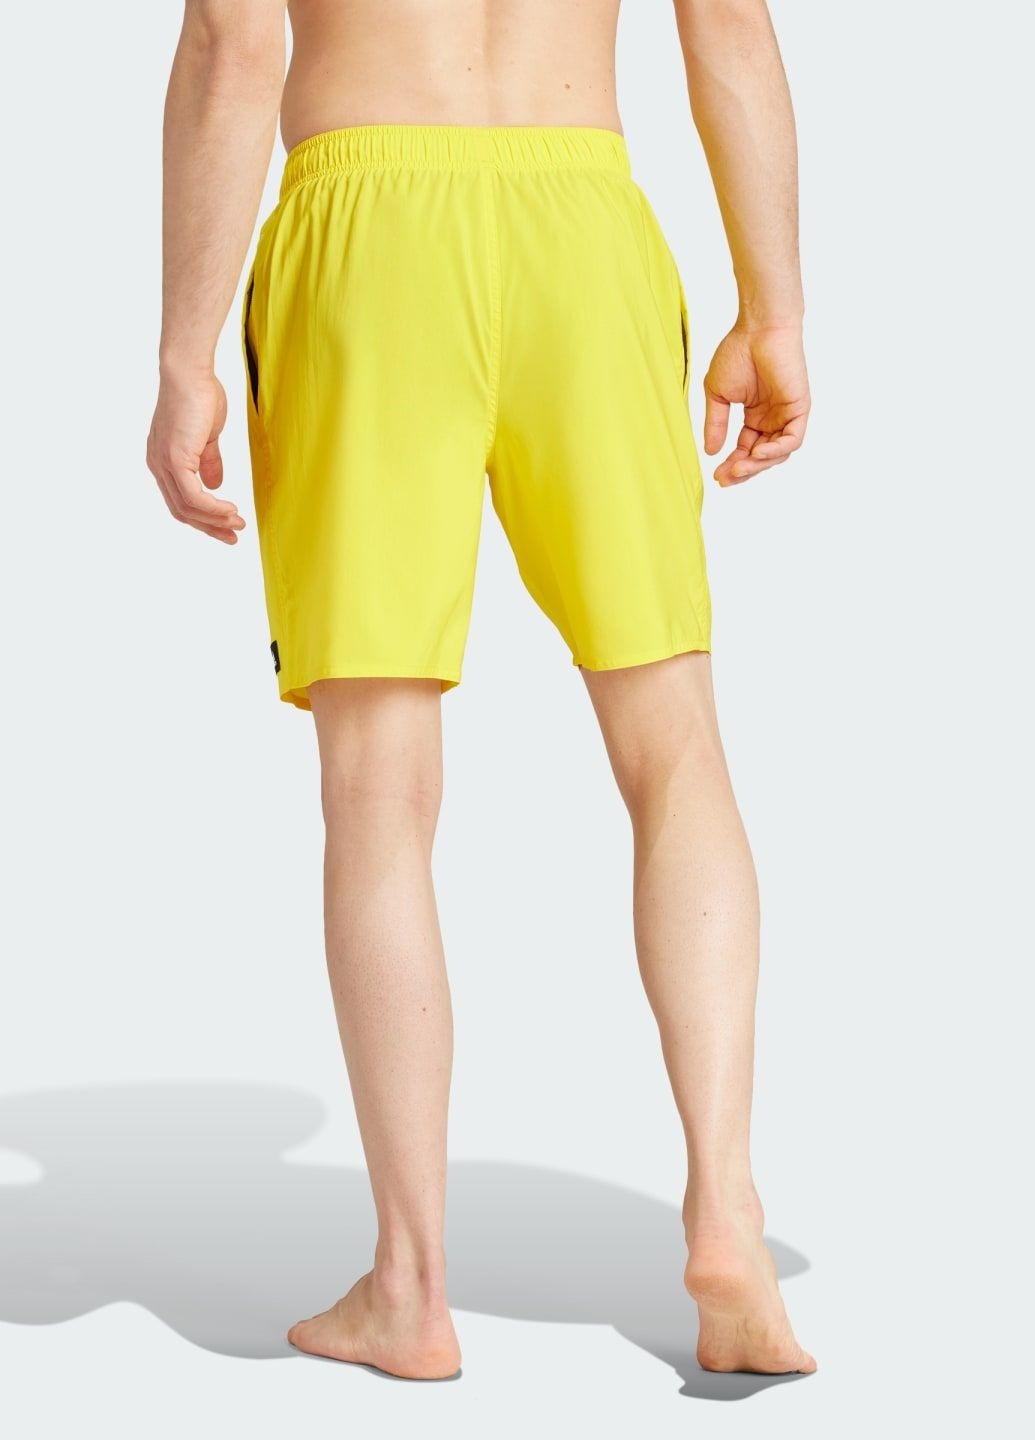 Мужские желтые спортивные плавательные шорты solid clx classic-length adidas